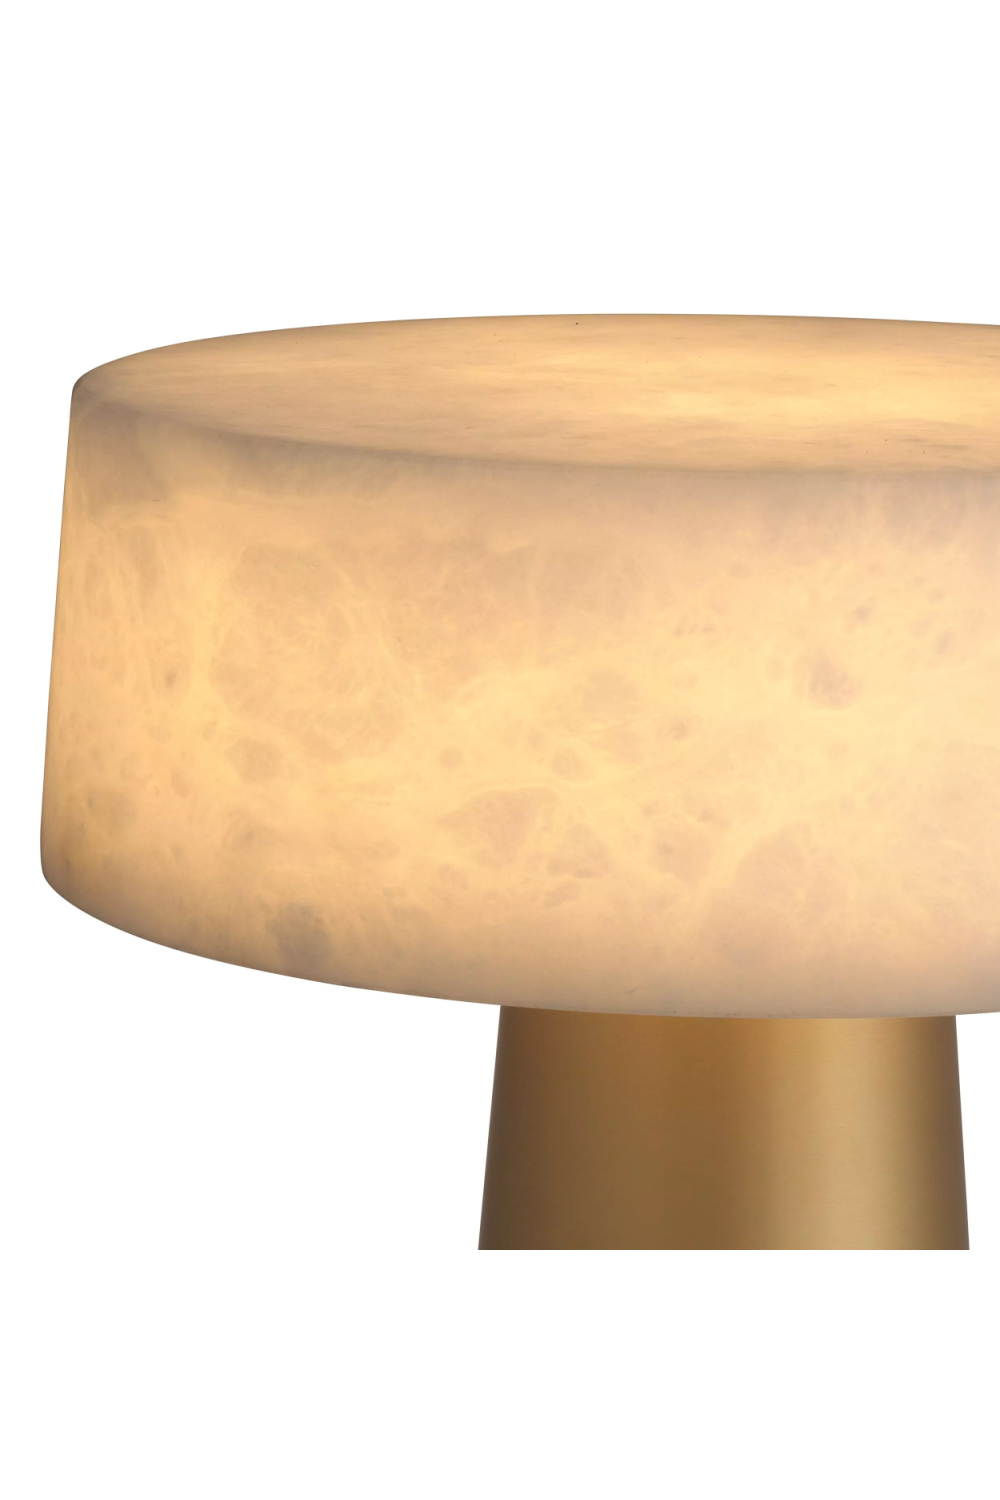 Modern Gold Table Lamp | Eichholtz Cinco | Oroa.com